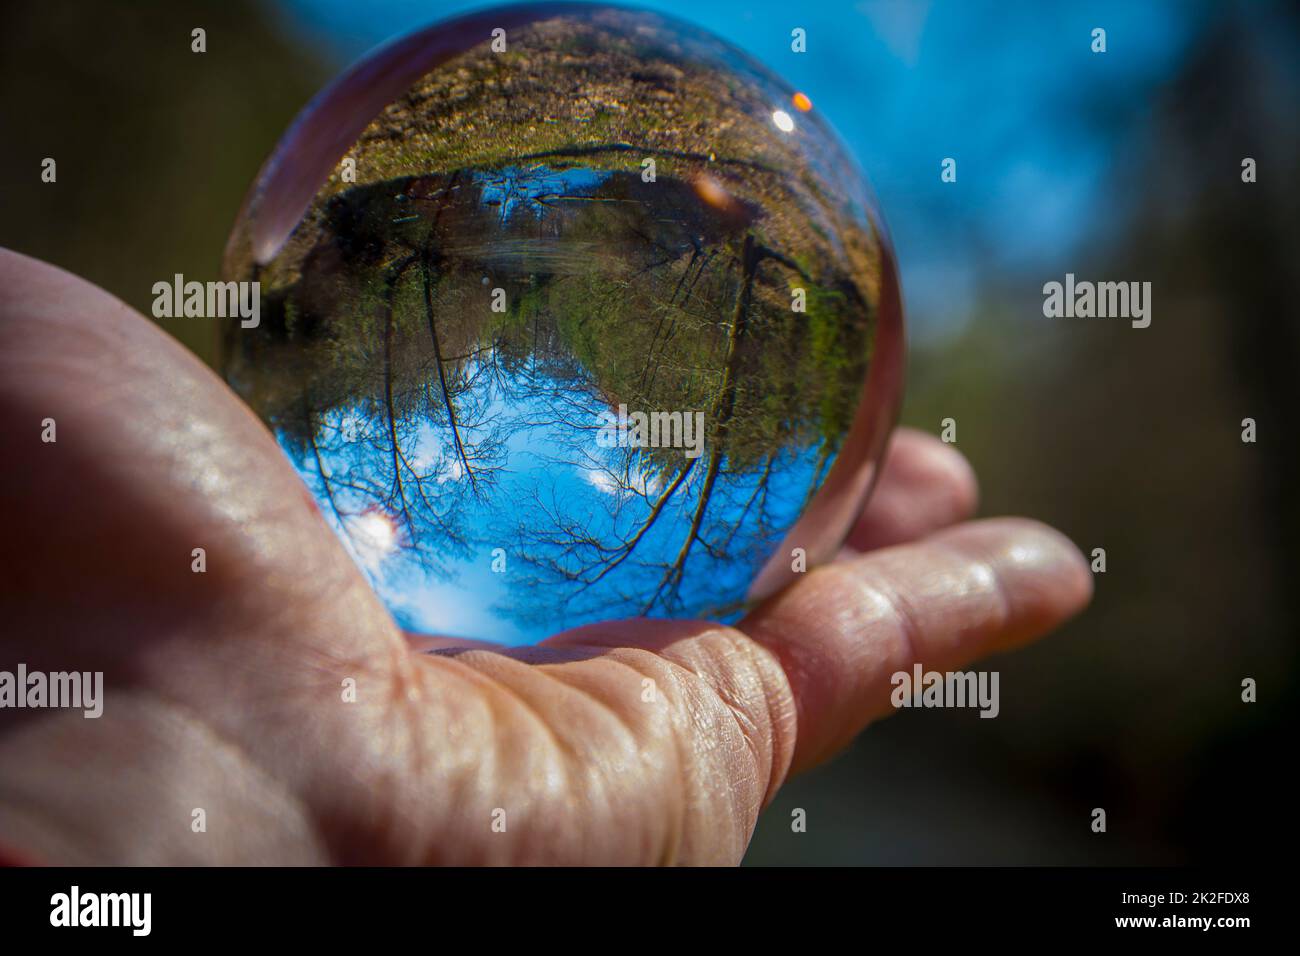 Palla di vetro a mano con la natura invertita e l'immagine del paesaggio Foto Stock